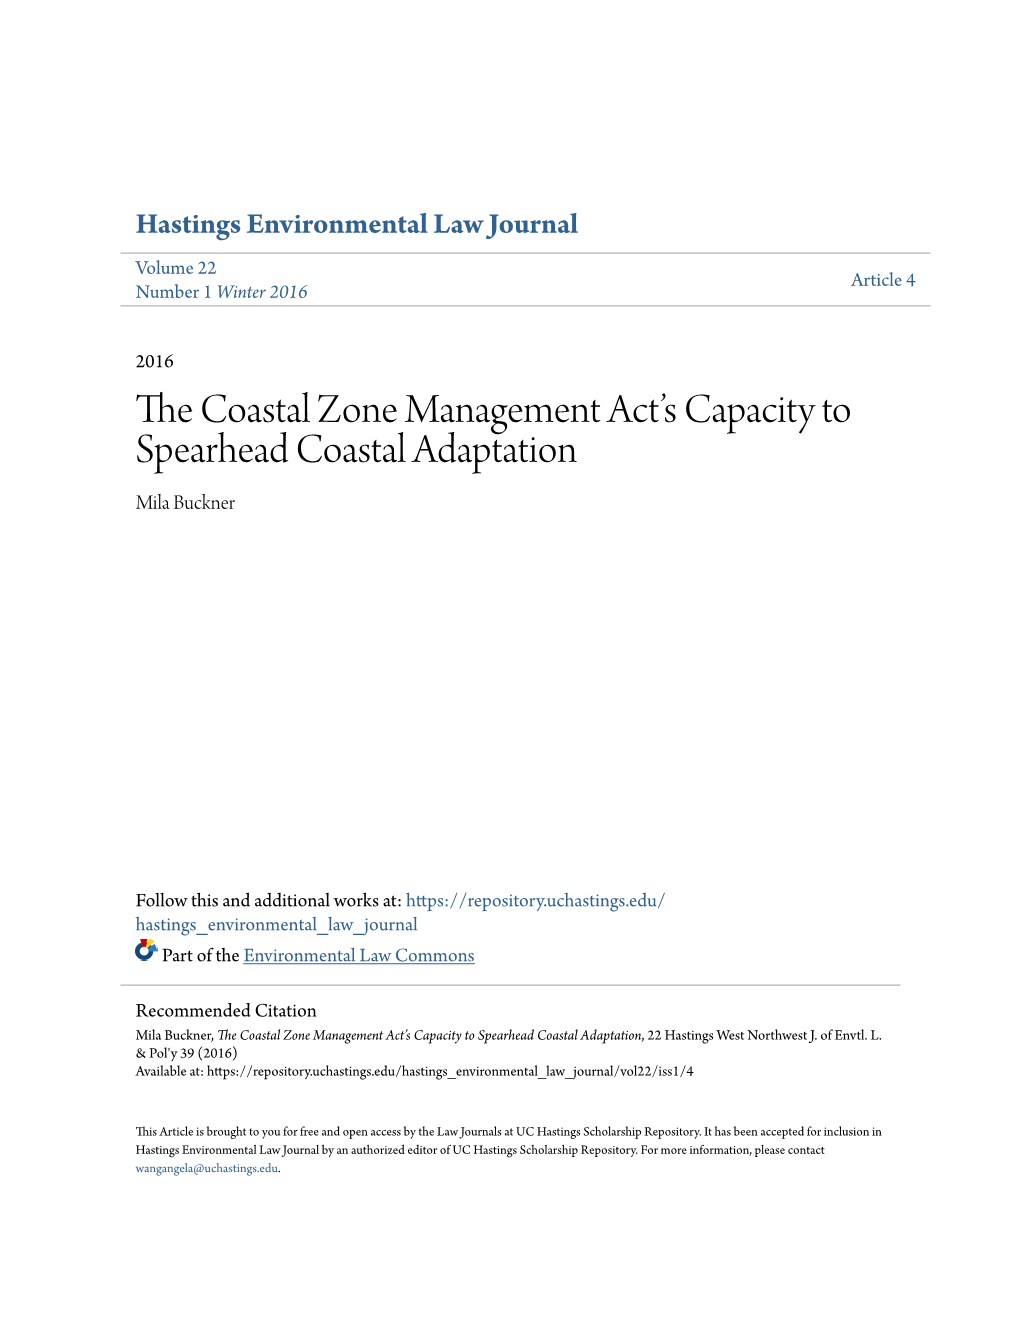 The Coastal Zone Management Act's Capacity to Spearhead Coastal